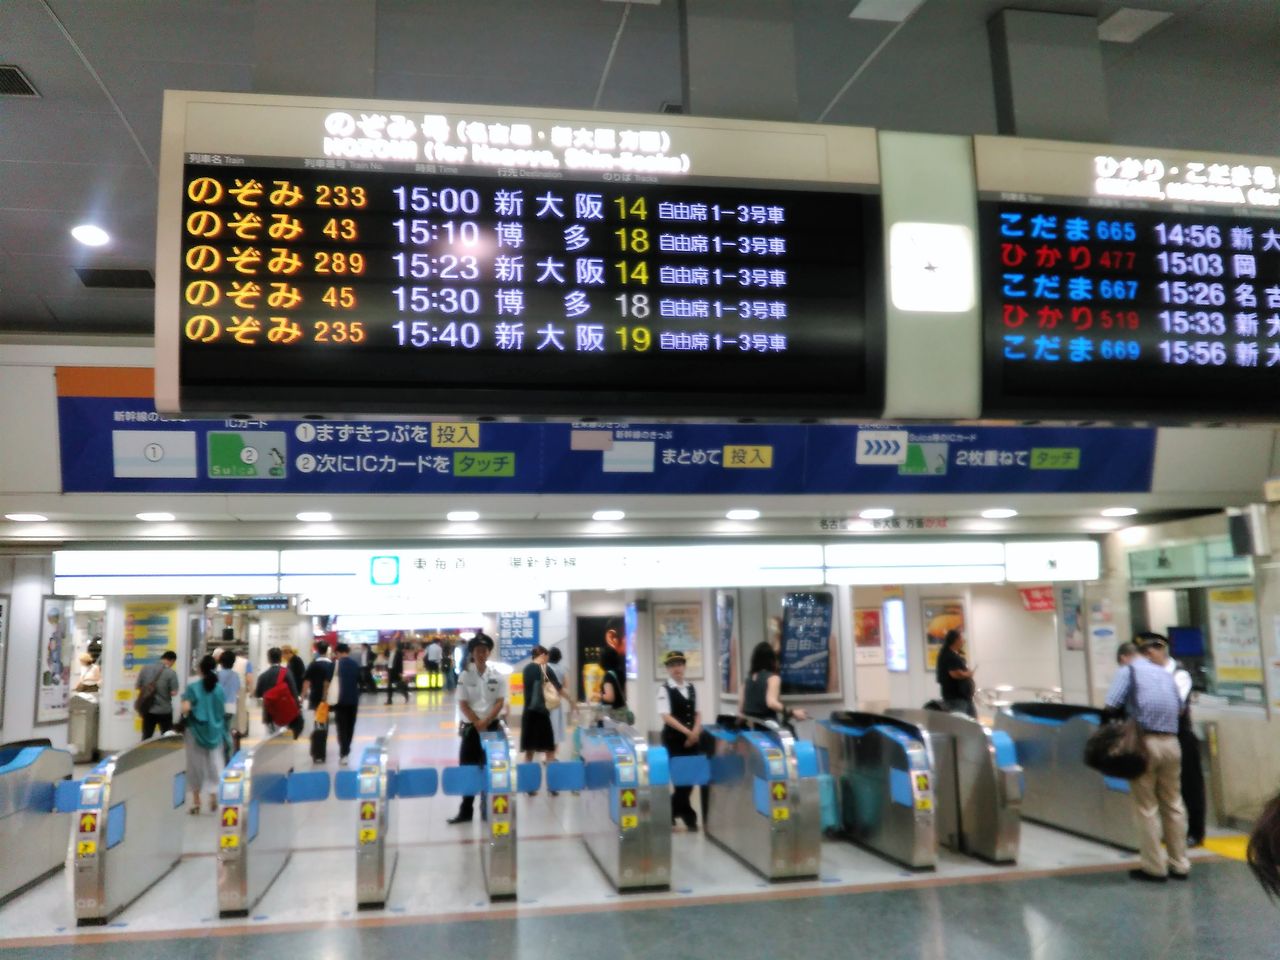 東海道新幹線 ひかり 普通車指定席で名古屋まで乗車してきました Shinoの鉄道旅行 ホテル宿泊備忘録